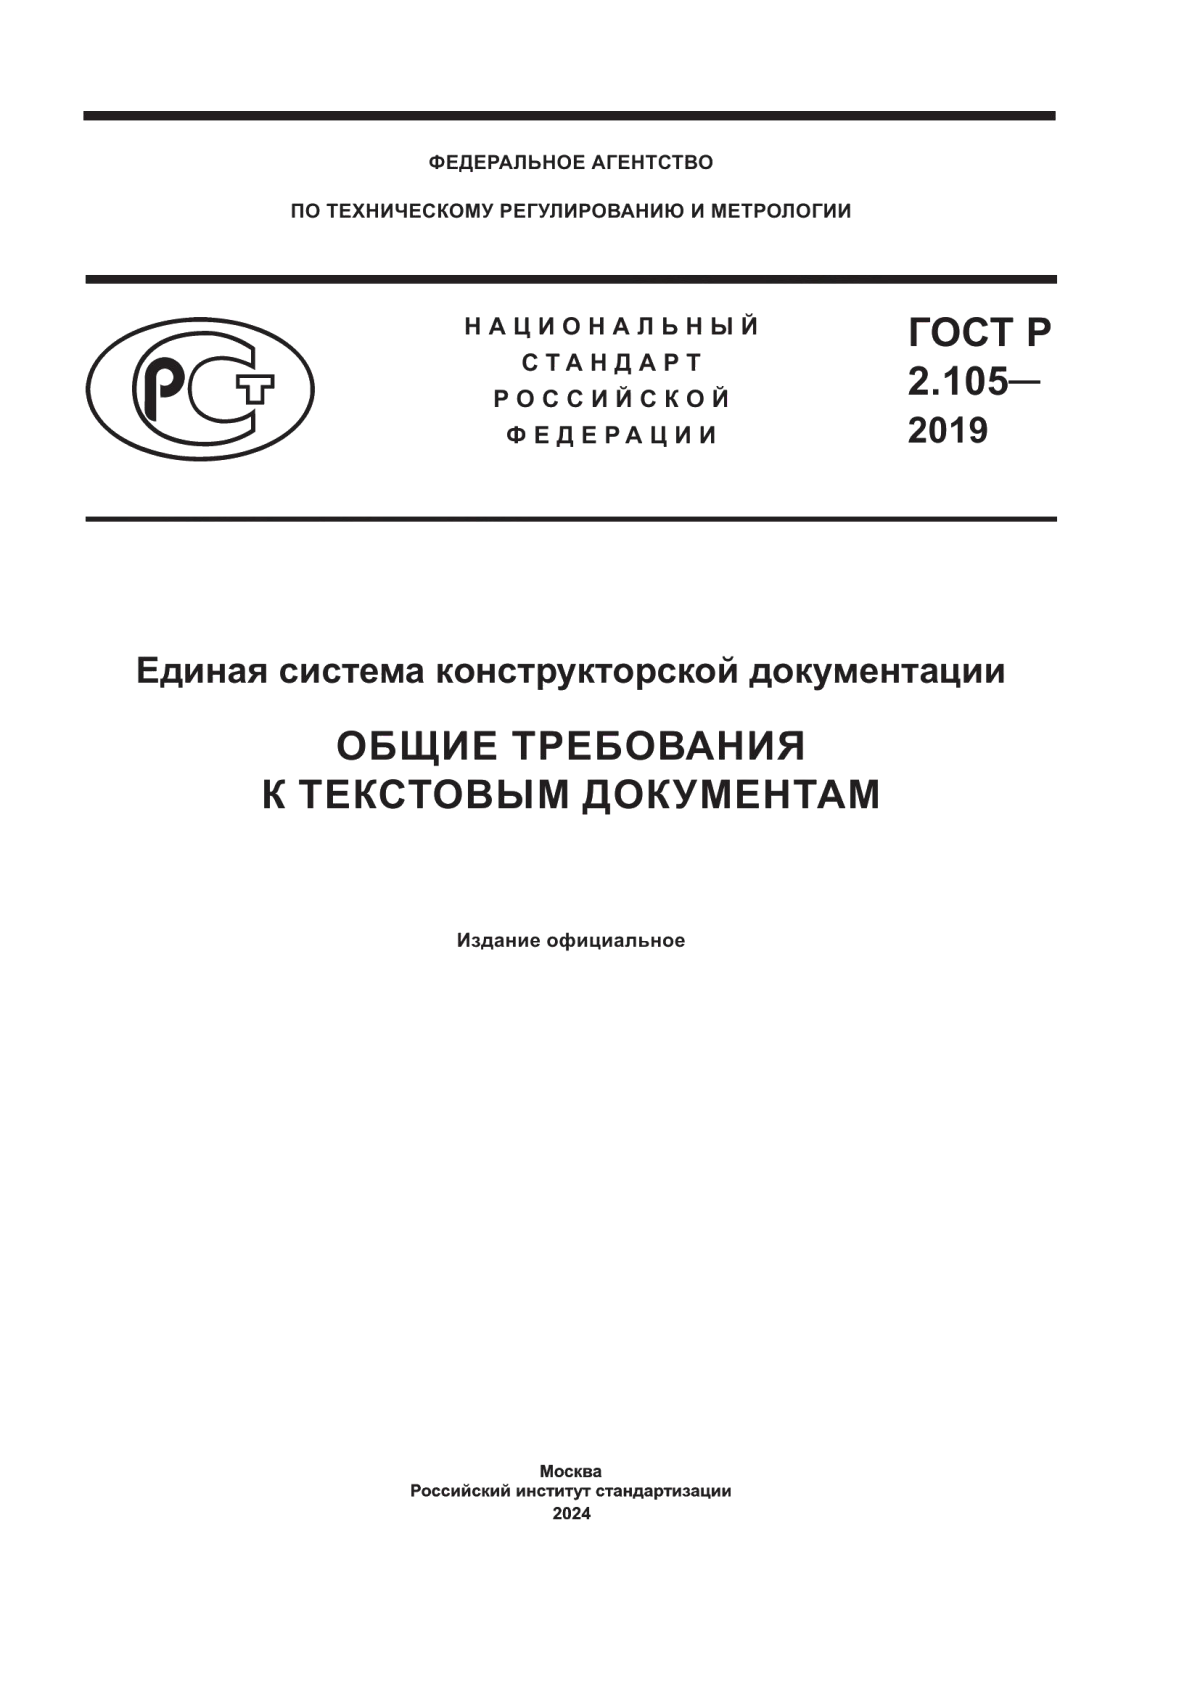 ГОСТ Р 2.105-2019 Единая система конструкторской документации. Общие требования к текстовым документам